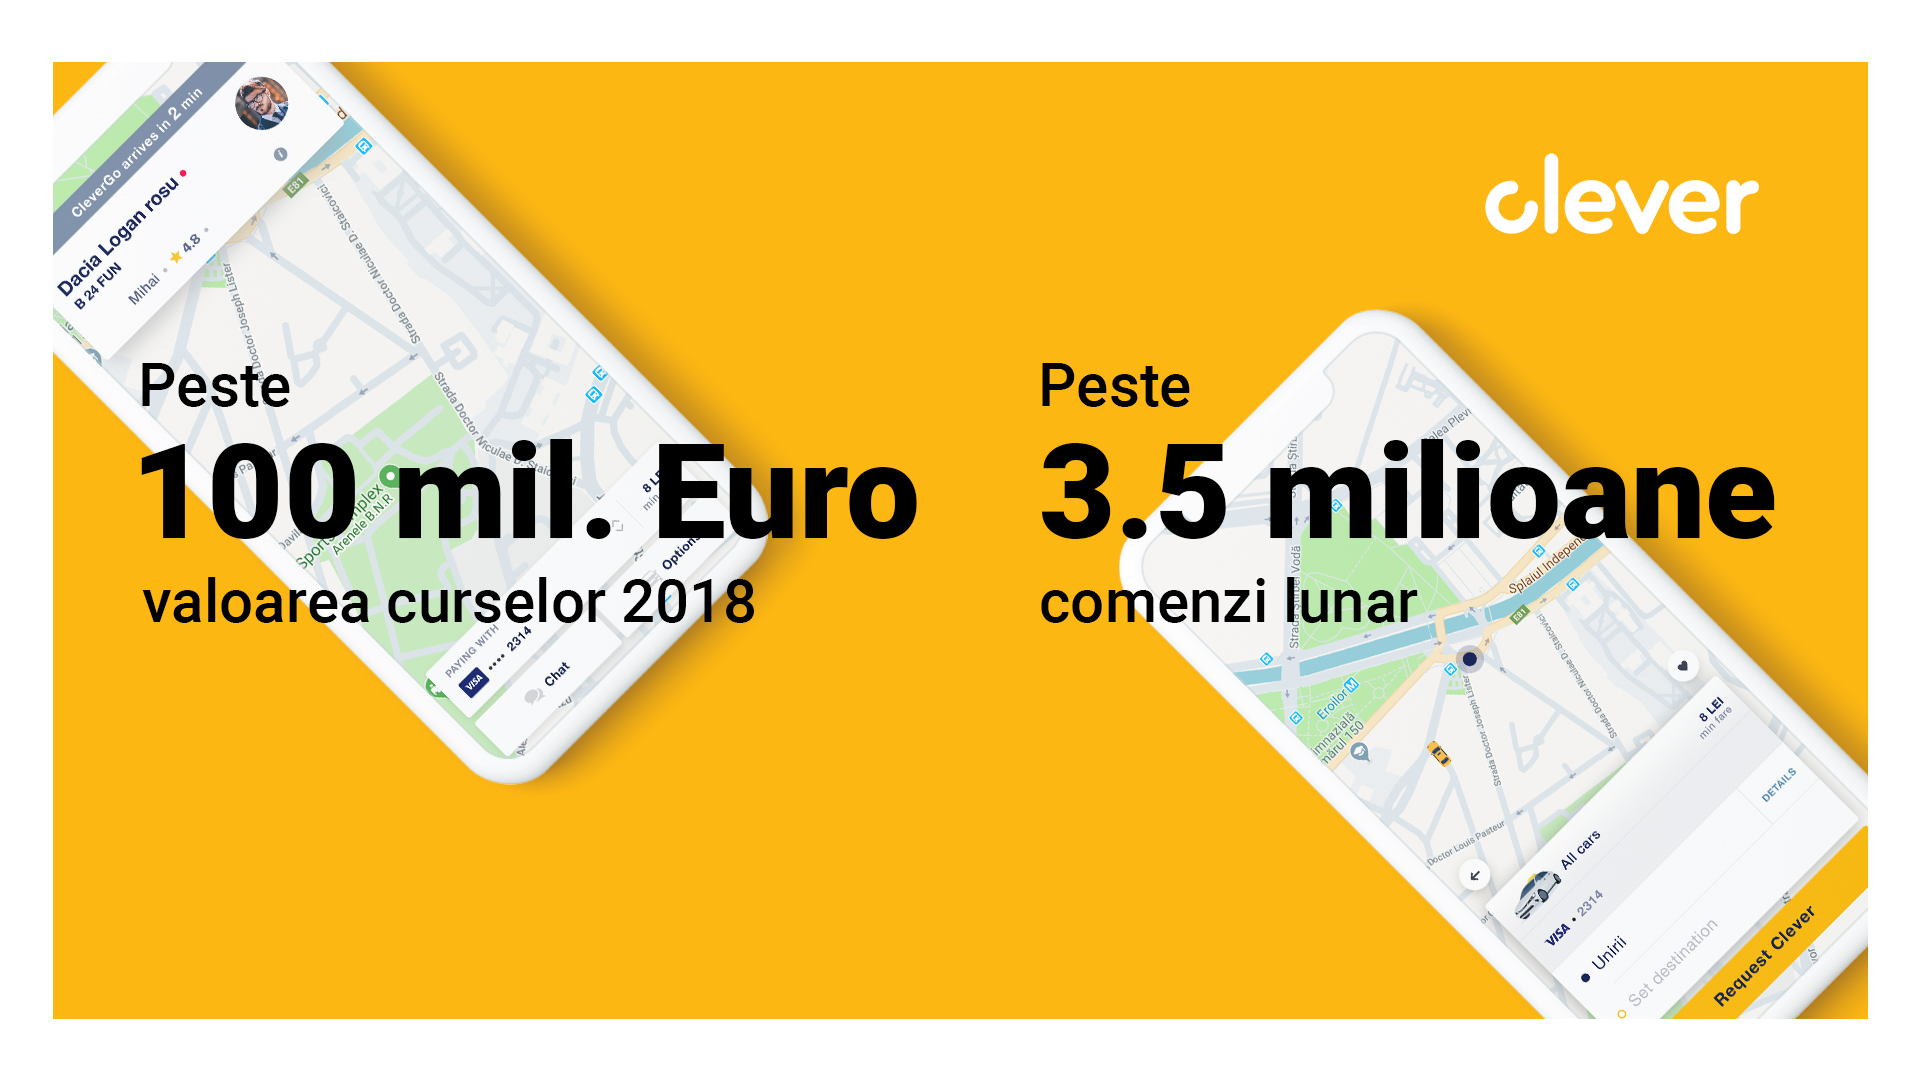 Habitat pierce Significance Clever: premieră românească în Europa centrală în mobilitate urbană -  Stirileprotv.ro